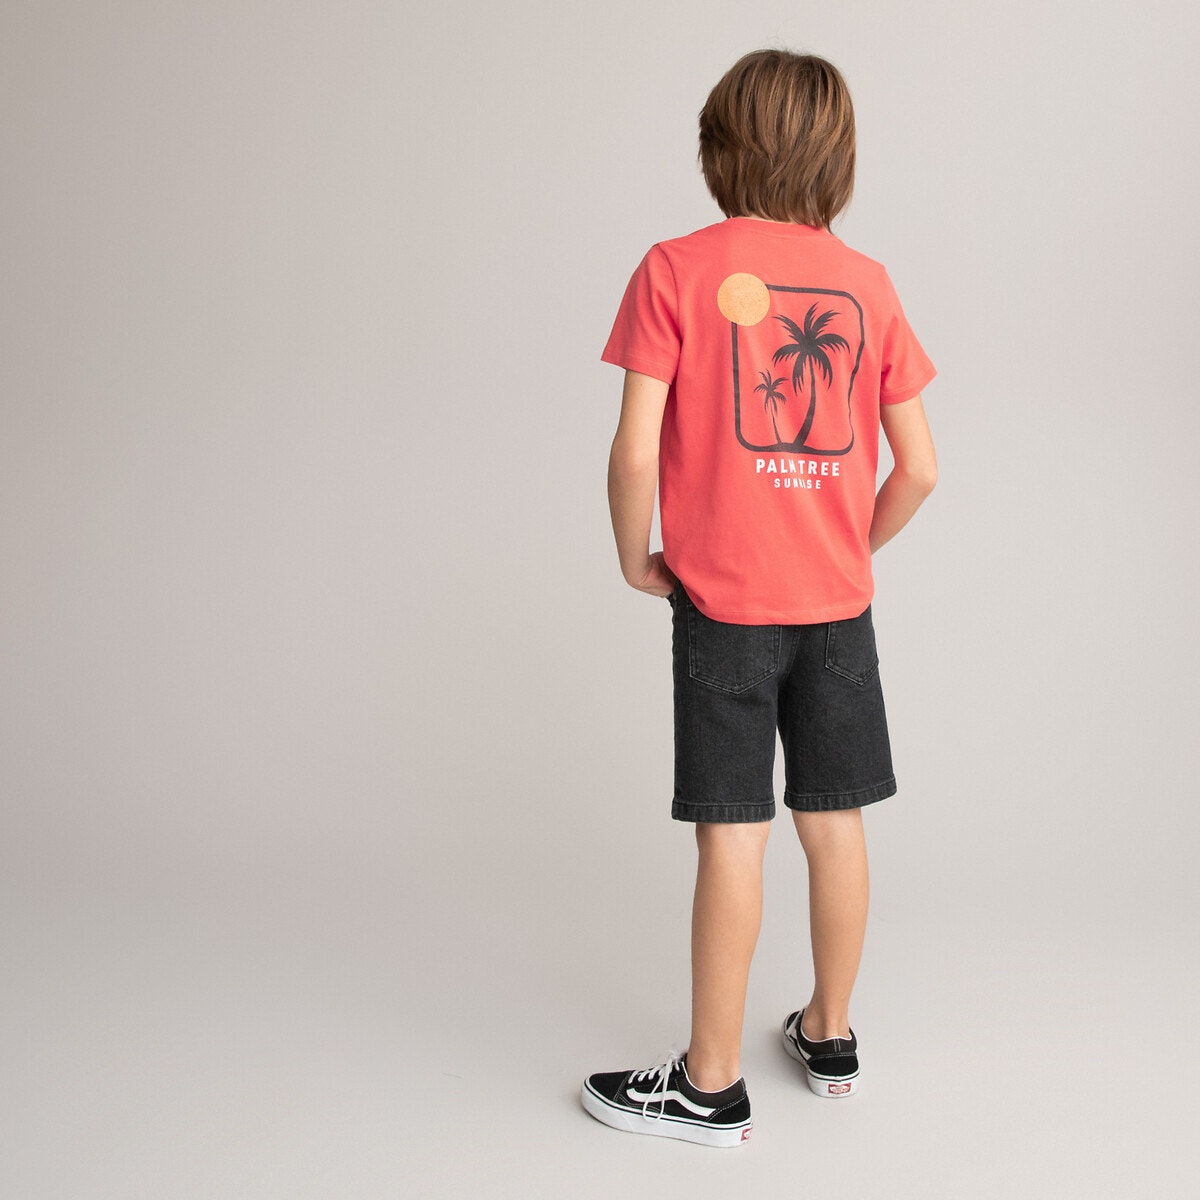 Μόδα > Παιδικά > Αγόρι > T-shirt, πόλο > Κοντά μανίκια Κοντομάνικο T-shirt με στάμπα φοίνικες στην πλάτη